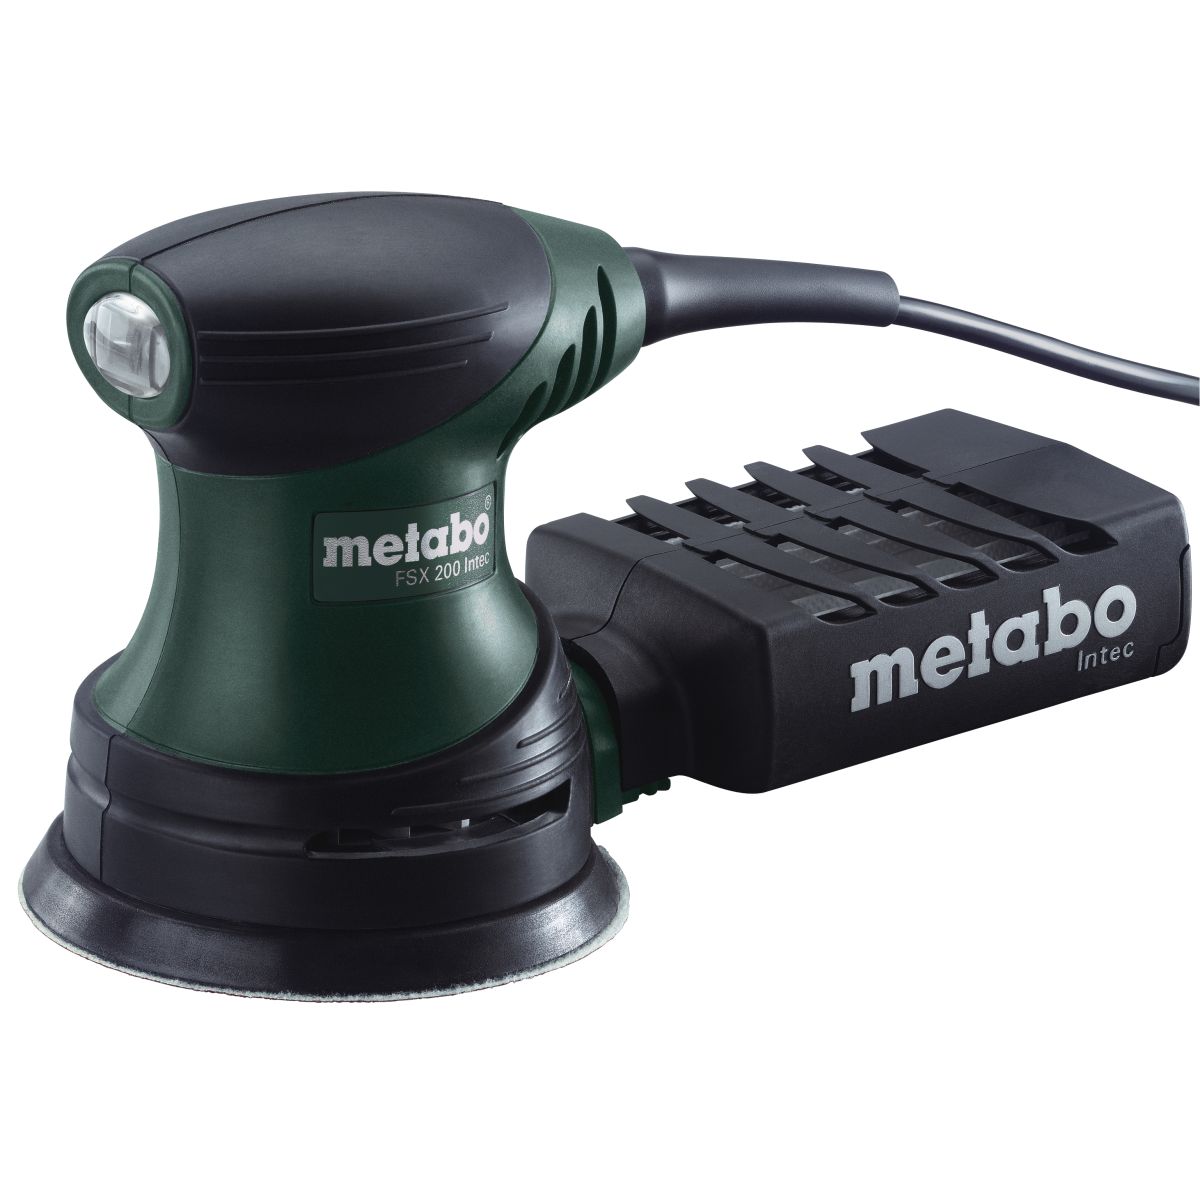 Metabo FSX 200 Intec Sander 240V